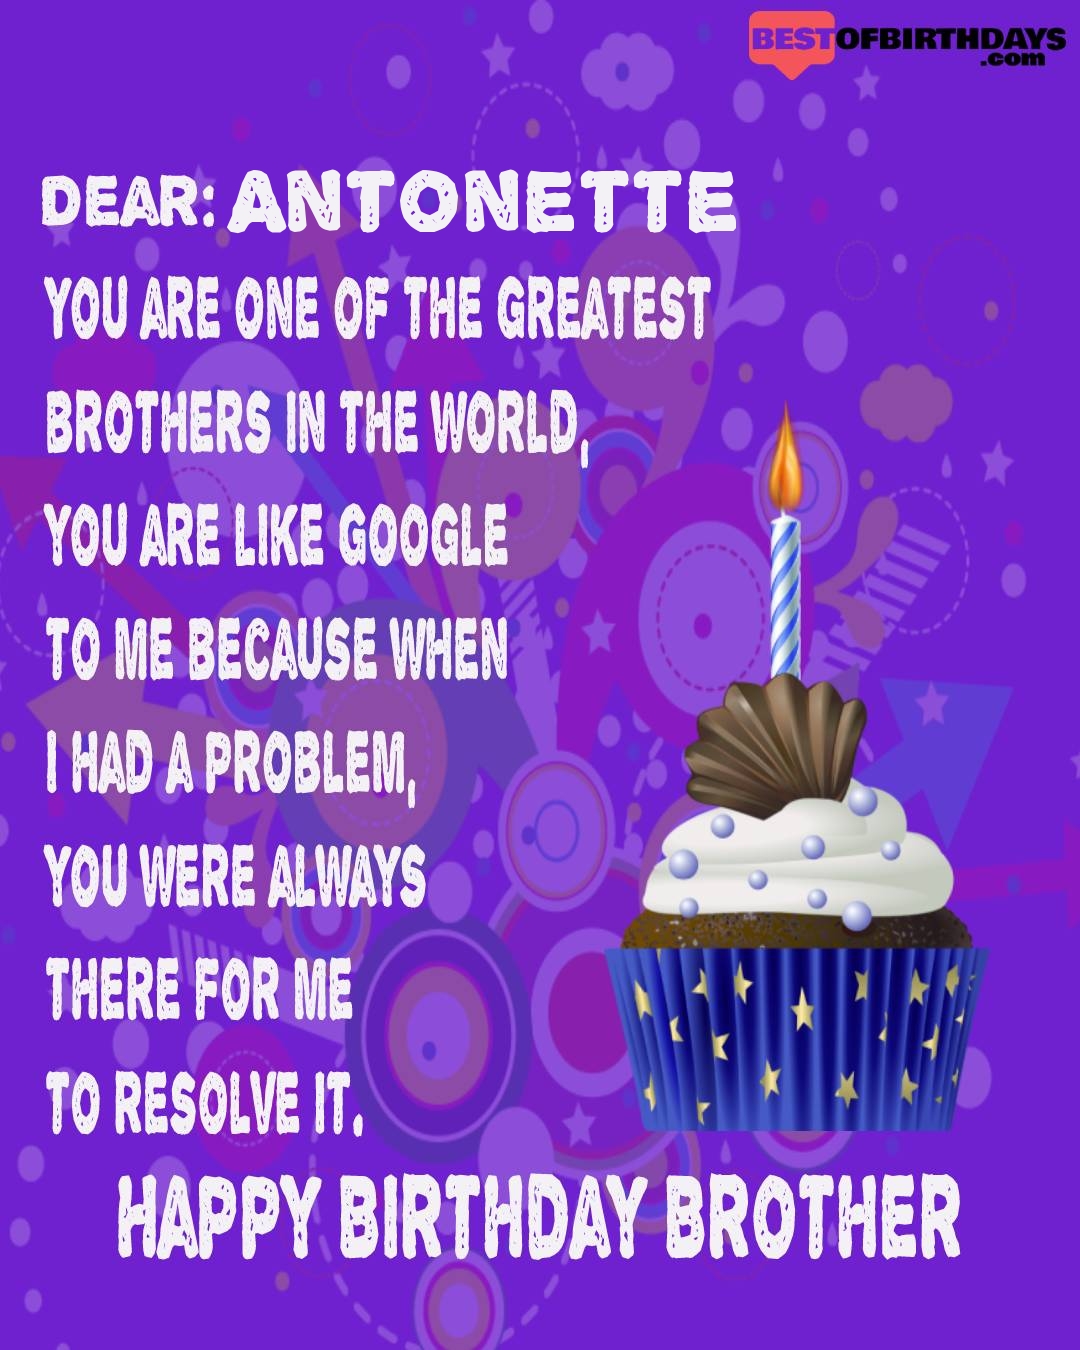 Happy birthday antonette bhai brother bro